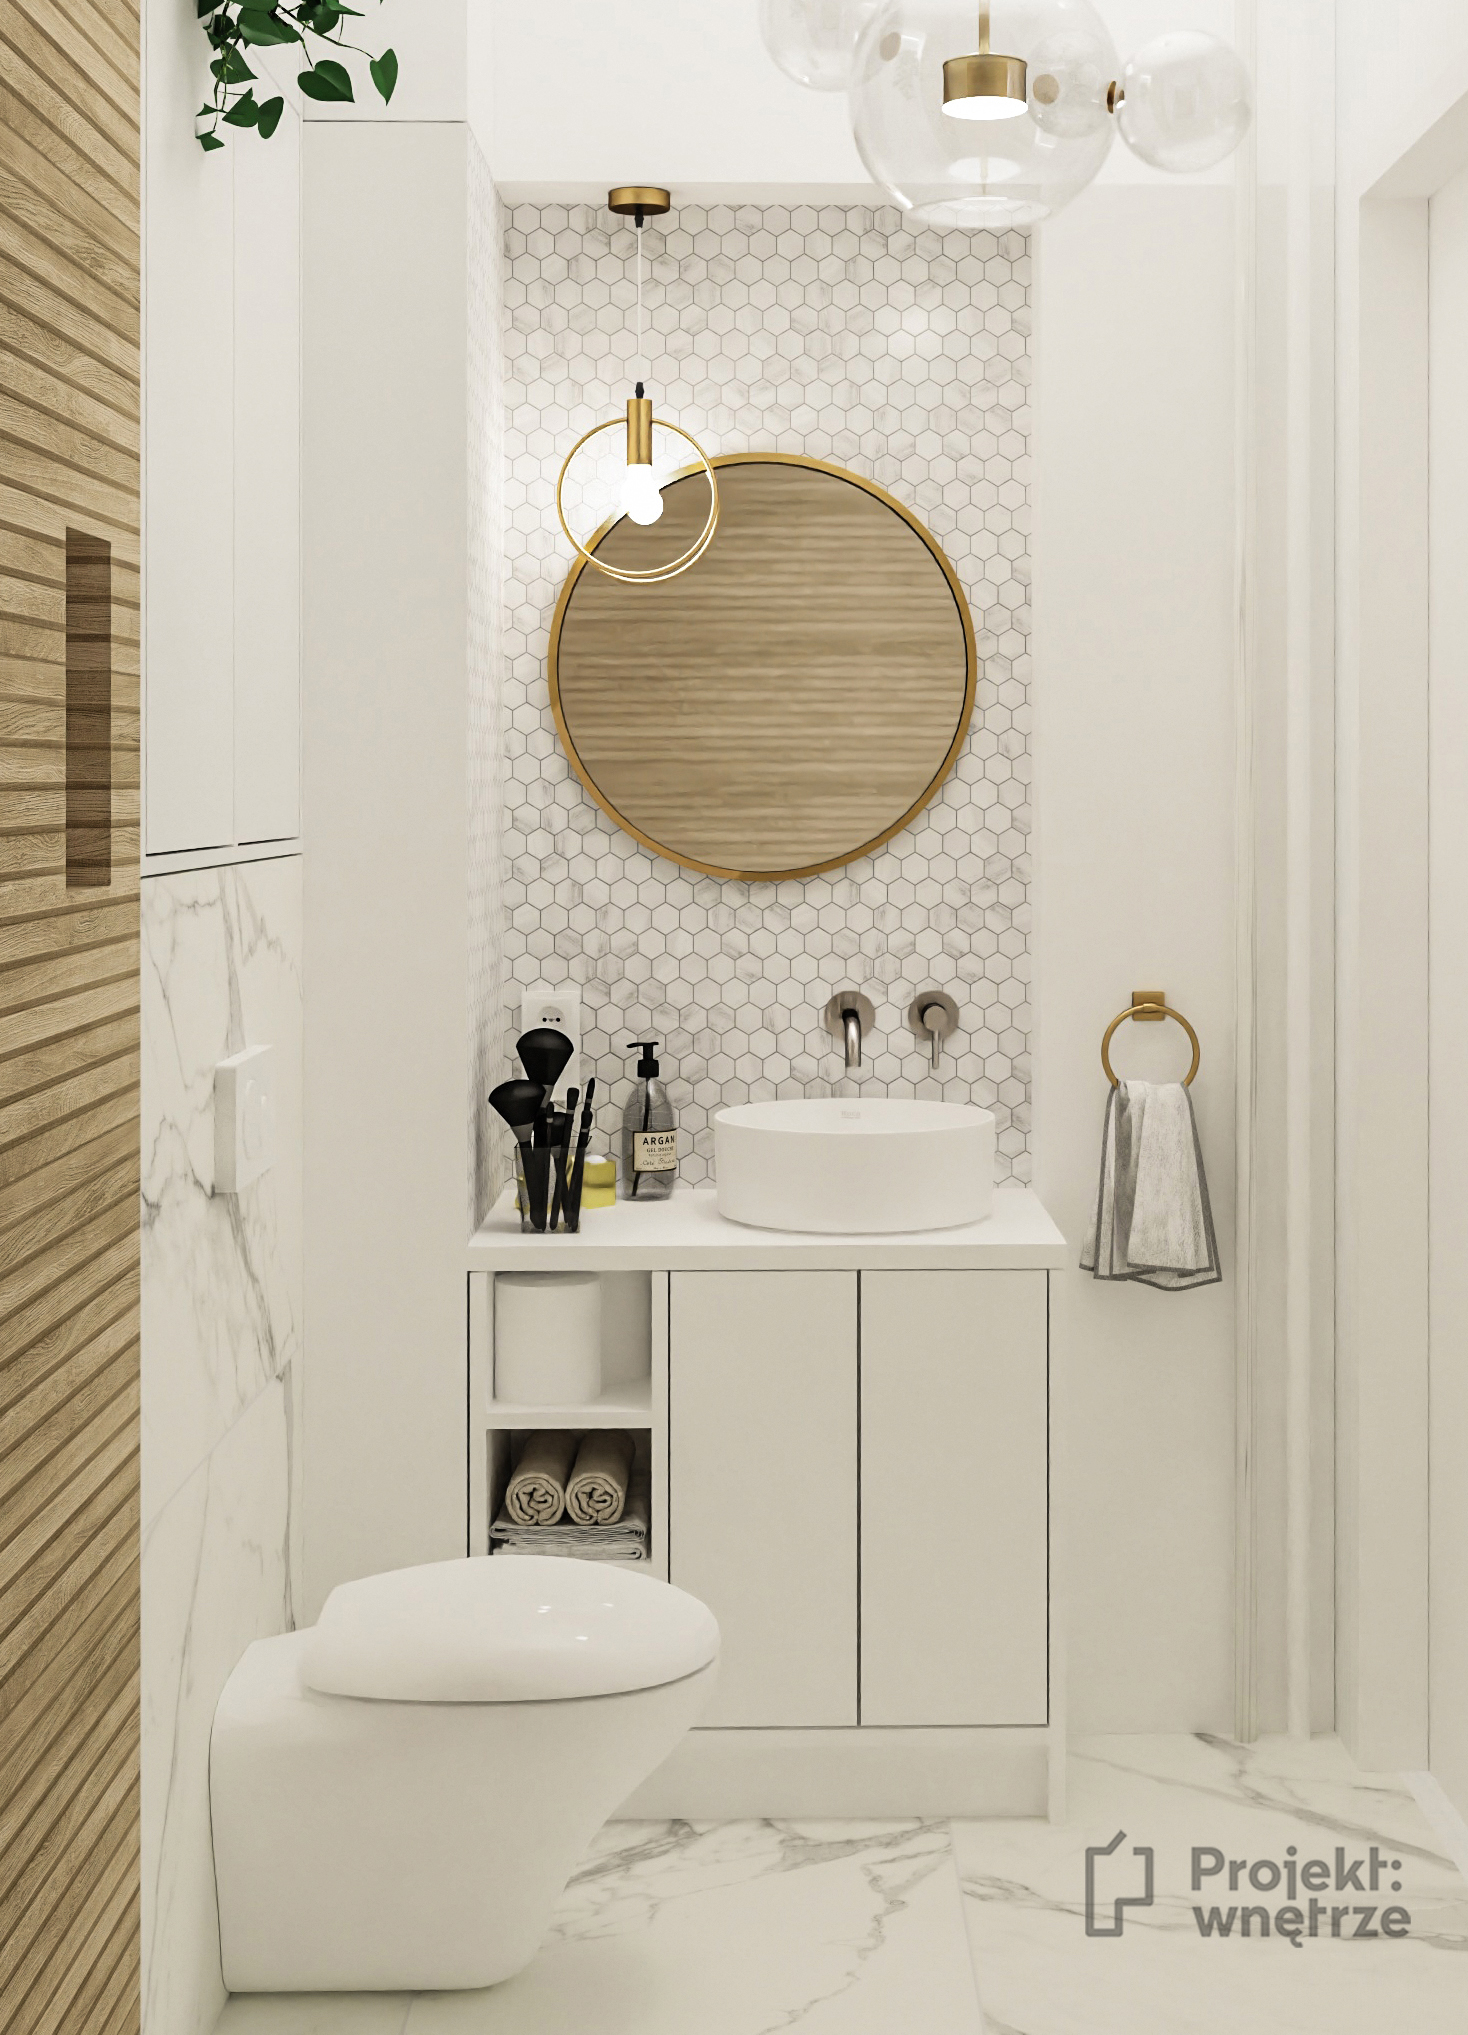 Mała elegancka łazienka marmur heksagon drewniane płytki Venis Starwood lamele okrągłe złote lustro mała umywalka - projekt łazienki PROJEKT WNĘTRZE www.projektwnetrze.com.pl